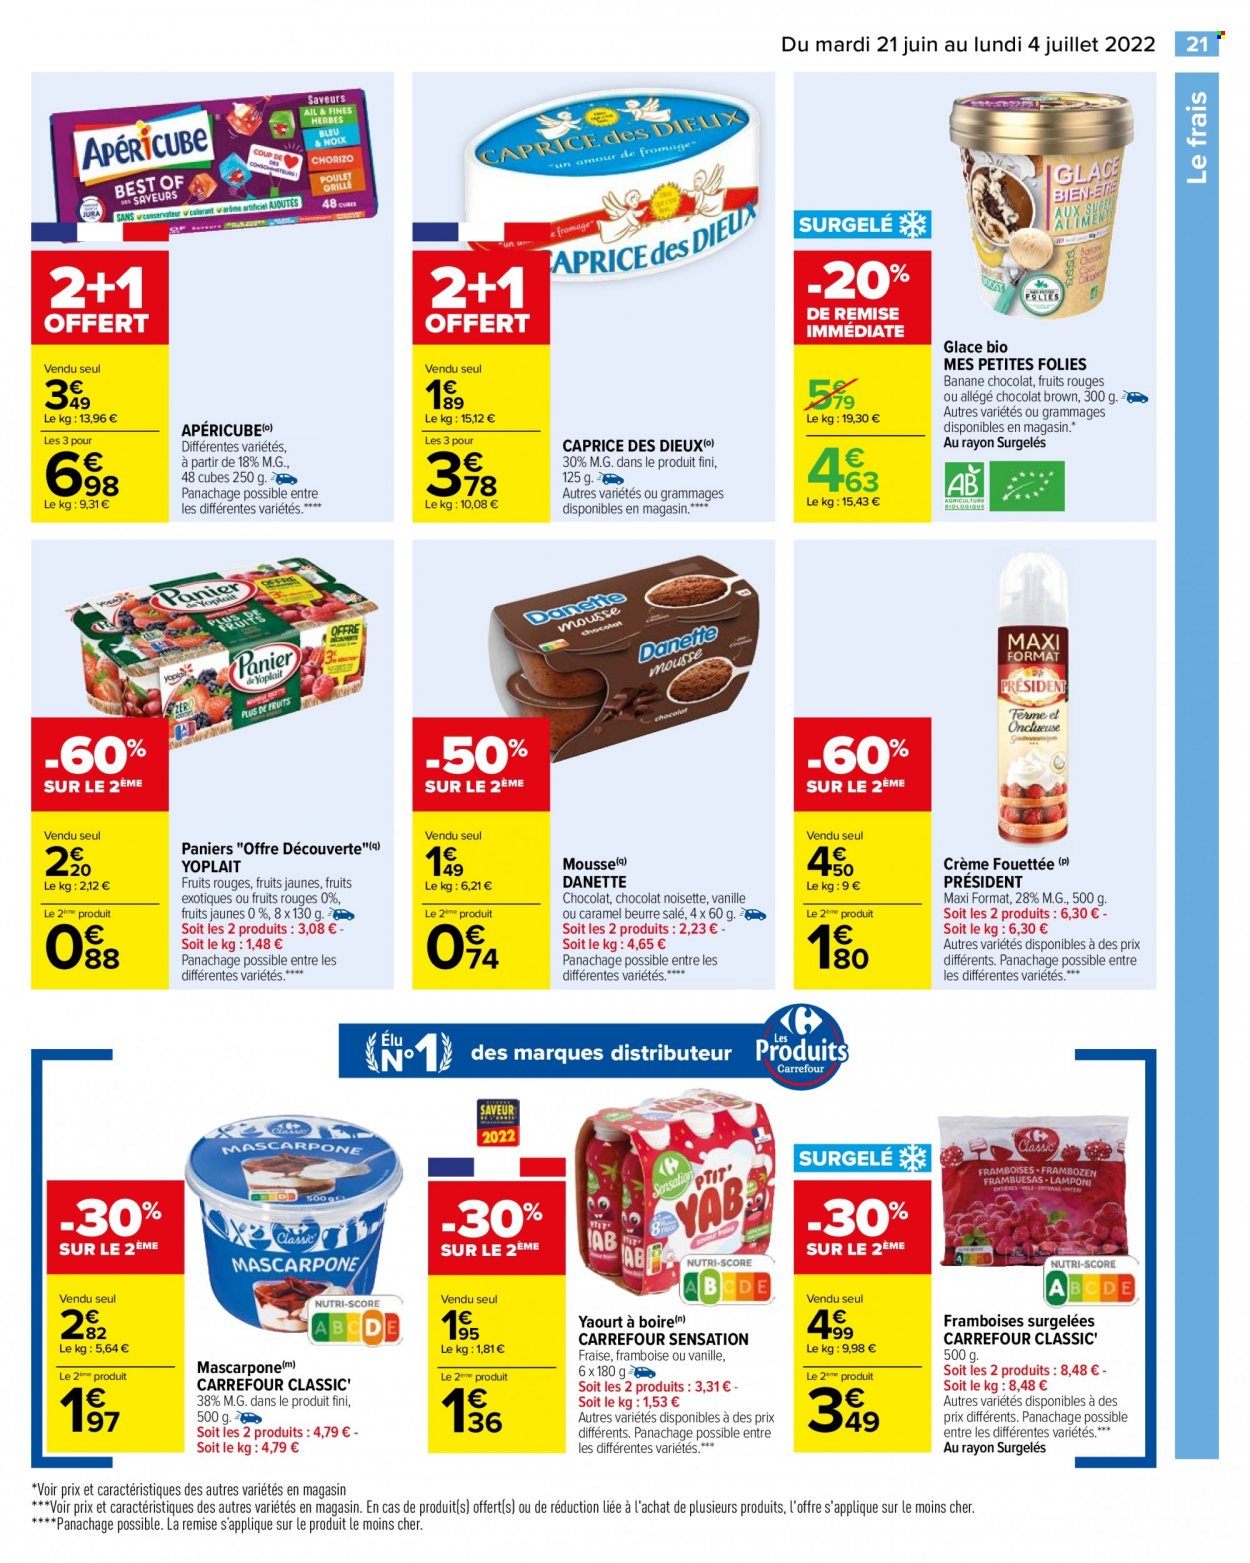 thumbnail - Catalogue Carrefour Hypermarchés - 21/06/2022 - 04/07/2022 - Produits soldés - bananes, fromage, mascarpone, Caprice des Dieux, Président, apéricube, yaourt, Danette, Yoplait, glace, chocolat. Page 23.